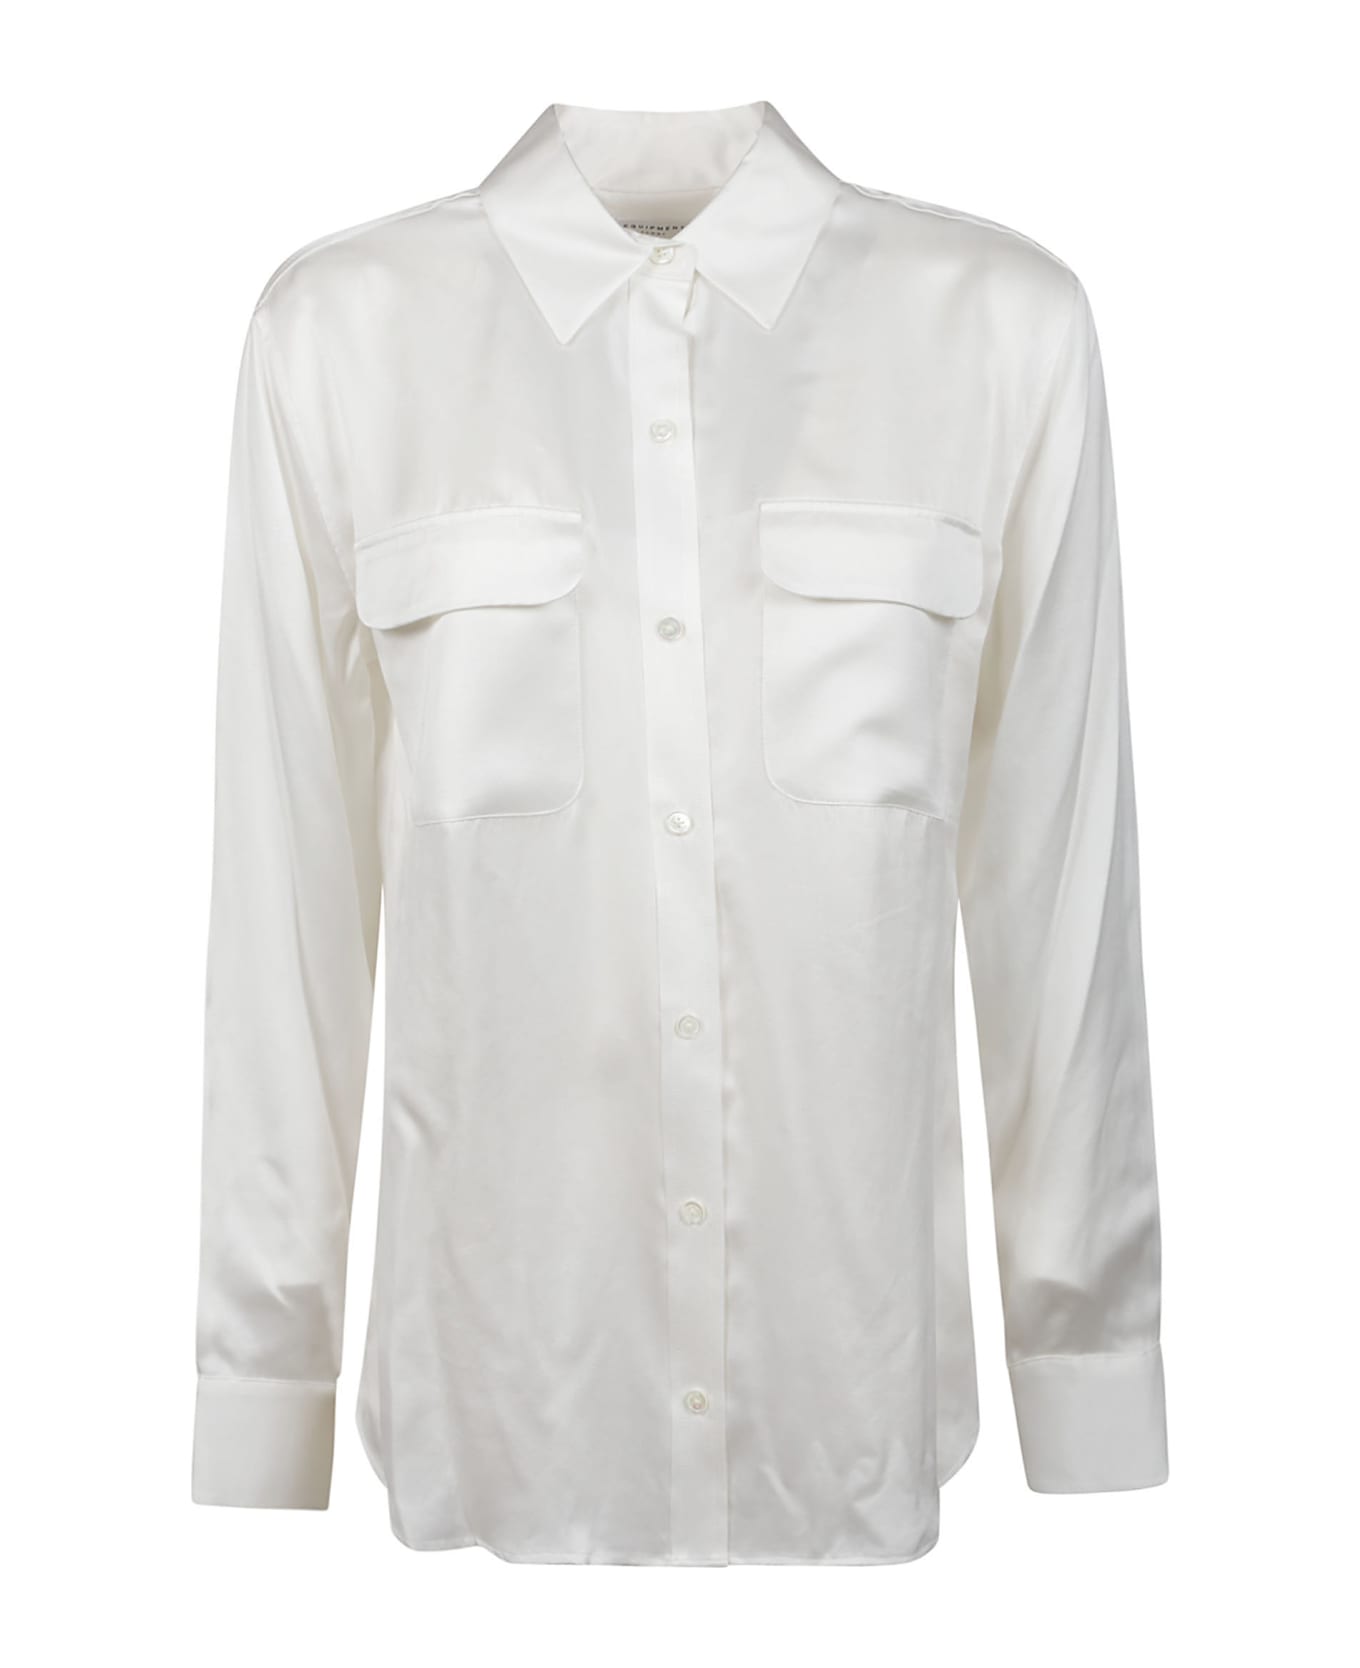 Equipment Signature Long Sleeve Shirt - Nature White